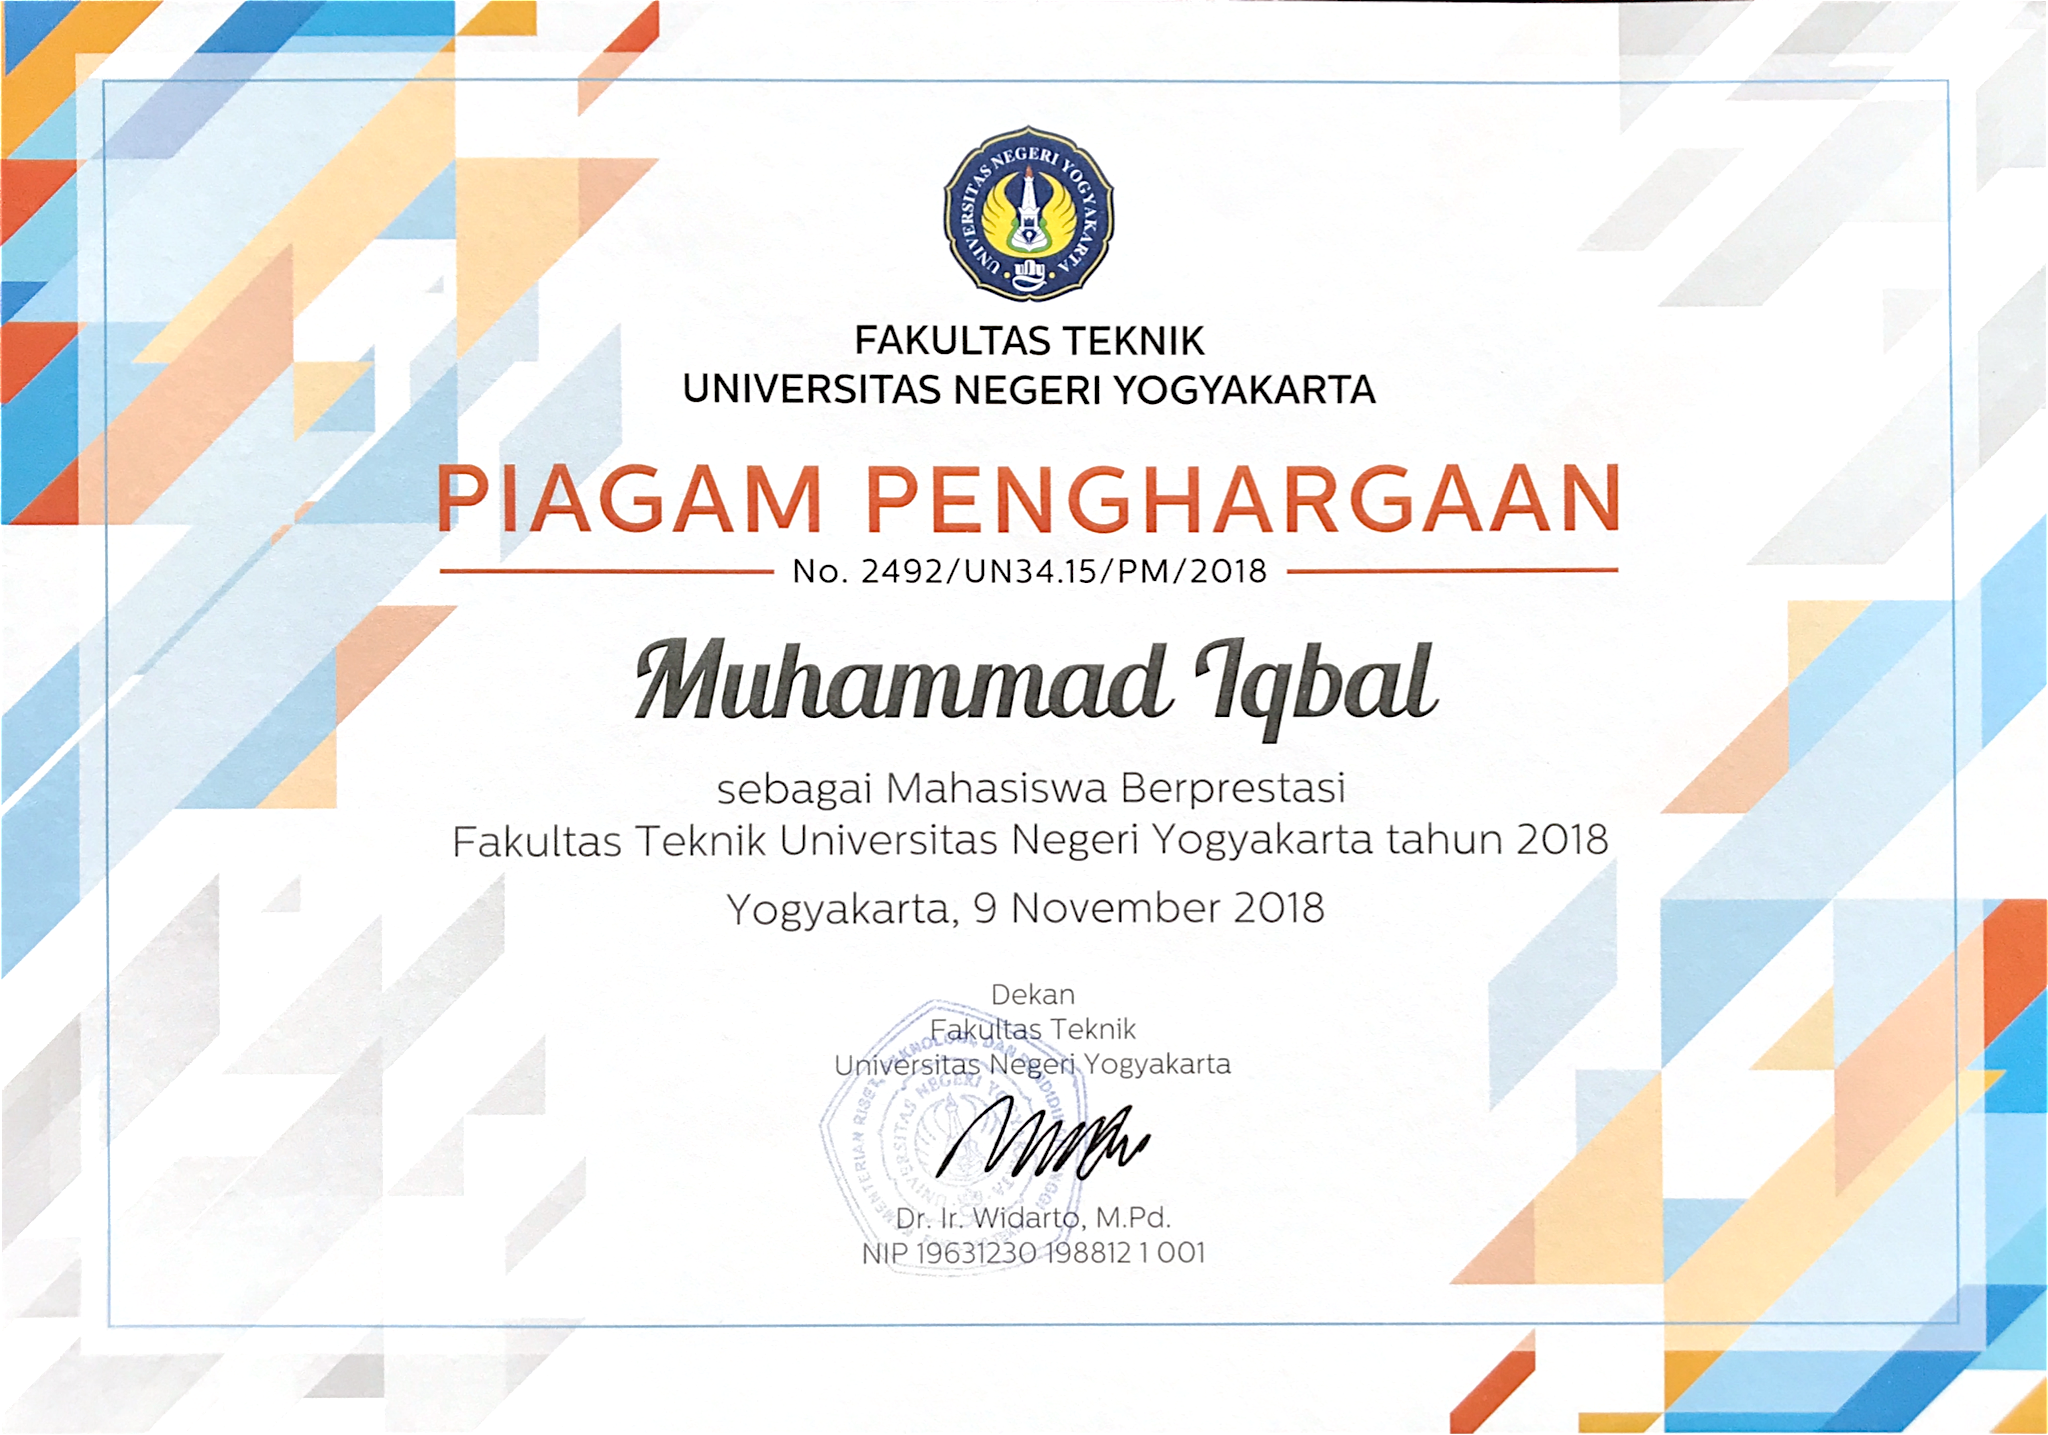 Foto Mahasiswa Berprestasi Fakultas Teknik Universitas Negeri Yogyakarta